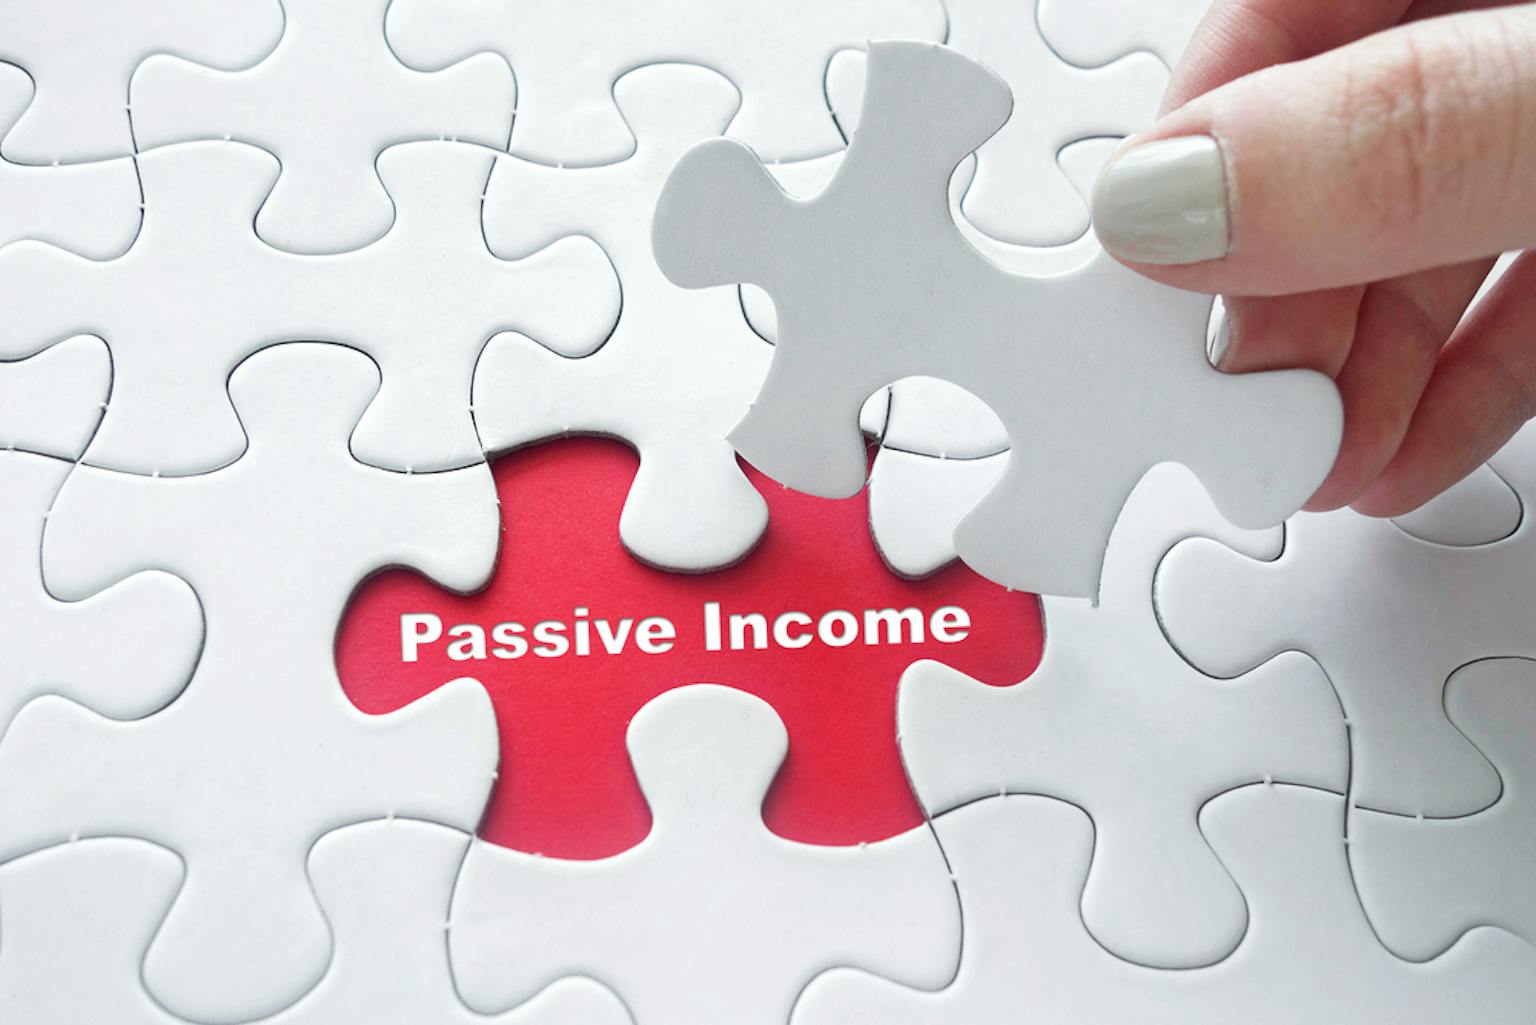 ชี้เป้า วิธีในการสร้าง Passive Income จากการลงทุน ฉบับทำได้จริง